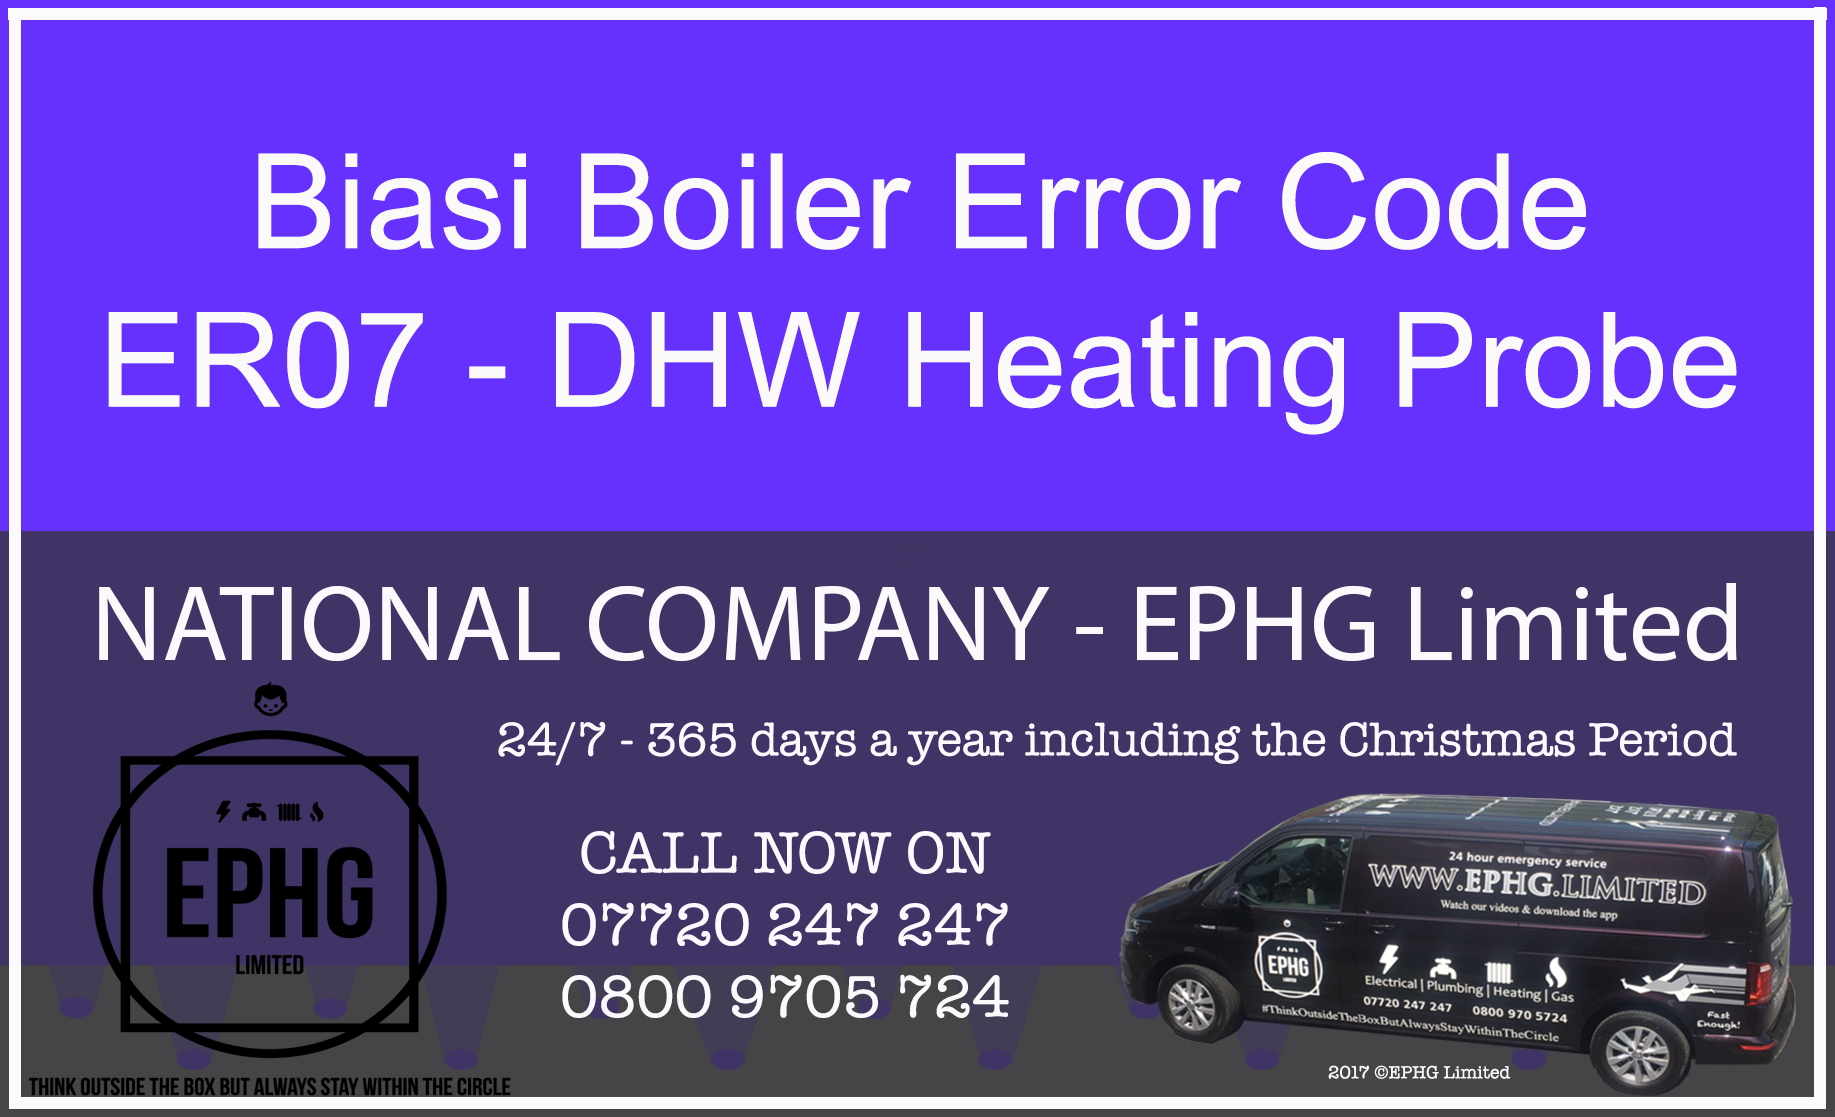 Biasi Boiler ER07 Fault Code Error